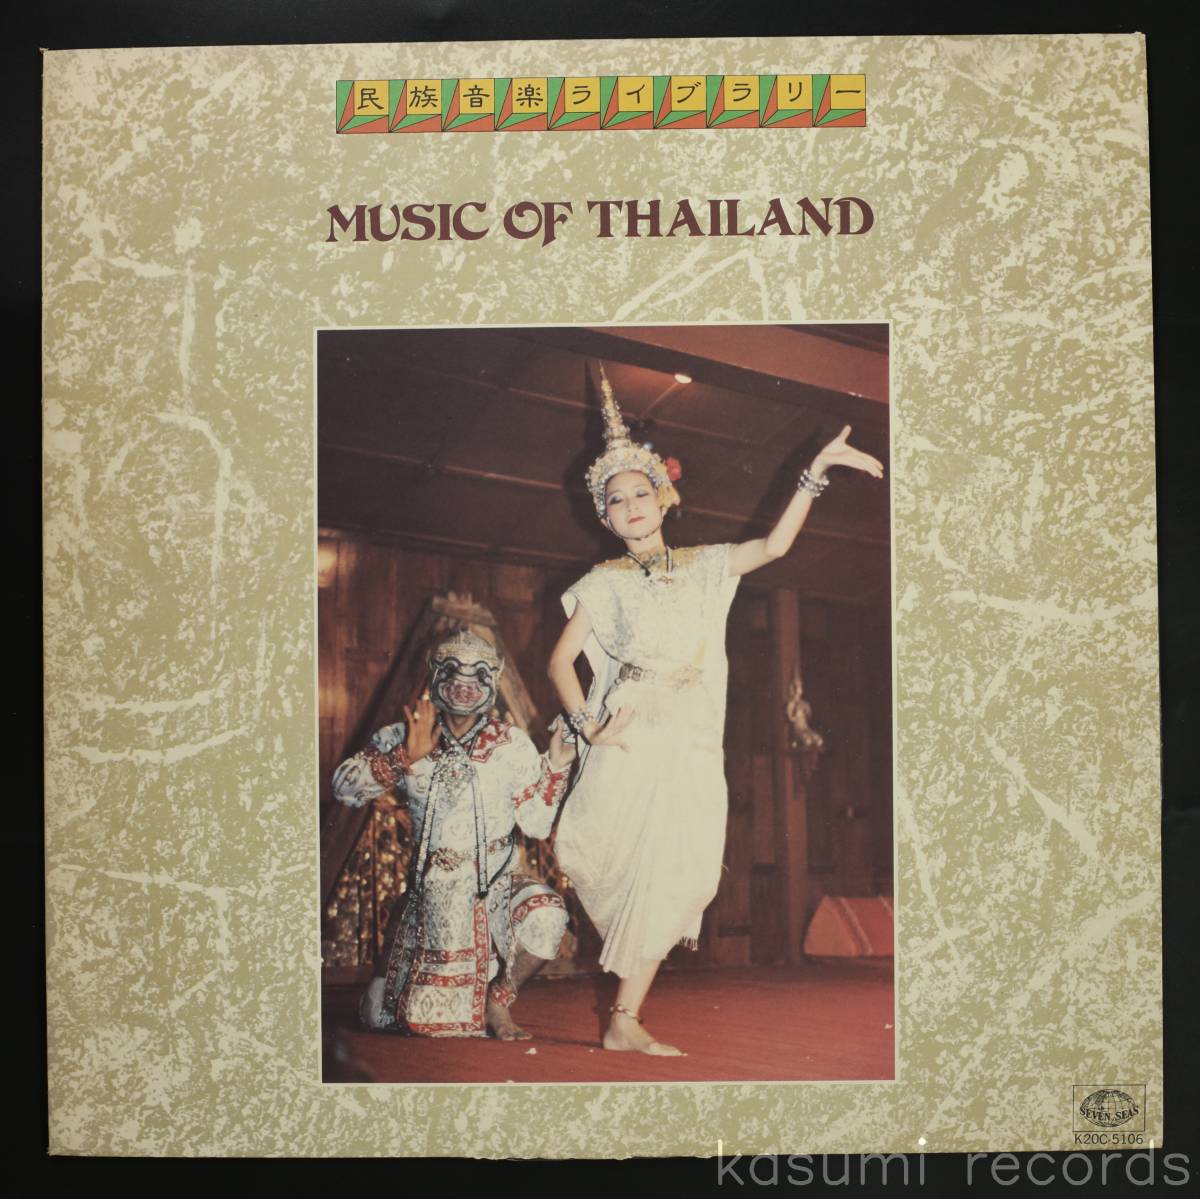 [82 год LP] на месте запись / Thai. музыка MUSIC OF THAILAND( товар среднего качества, запись хорошо,utito*na-*sa ватт запись,KING народные обычаи музыка )